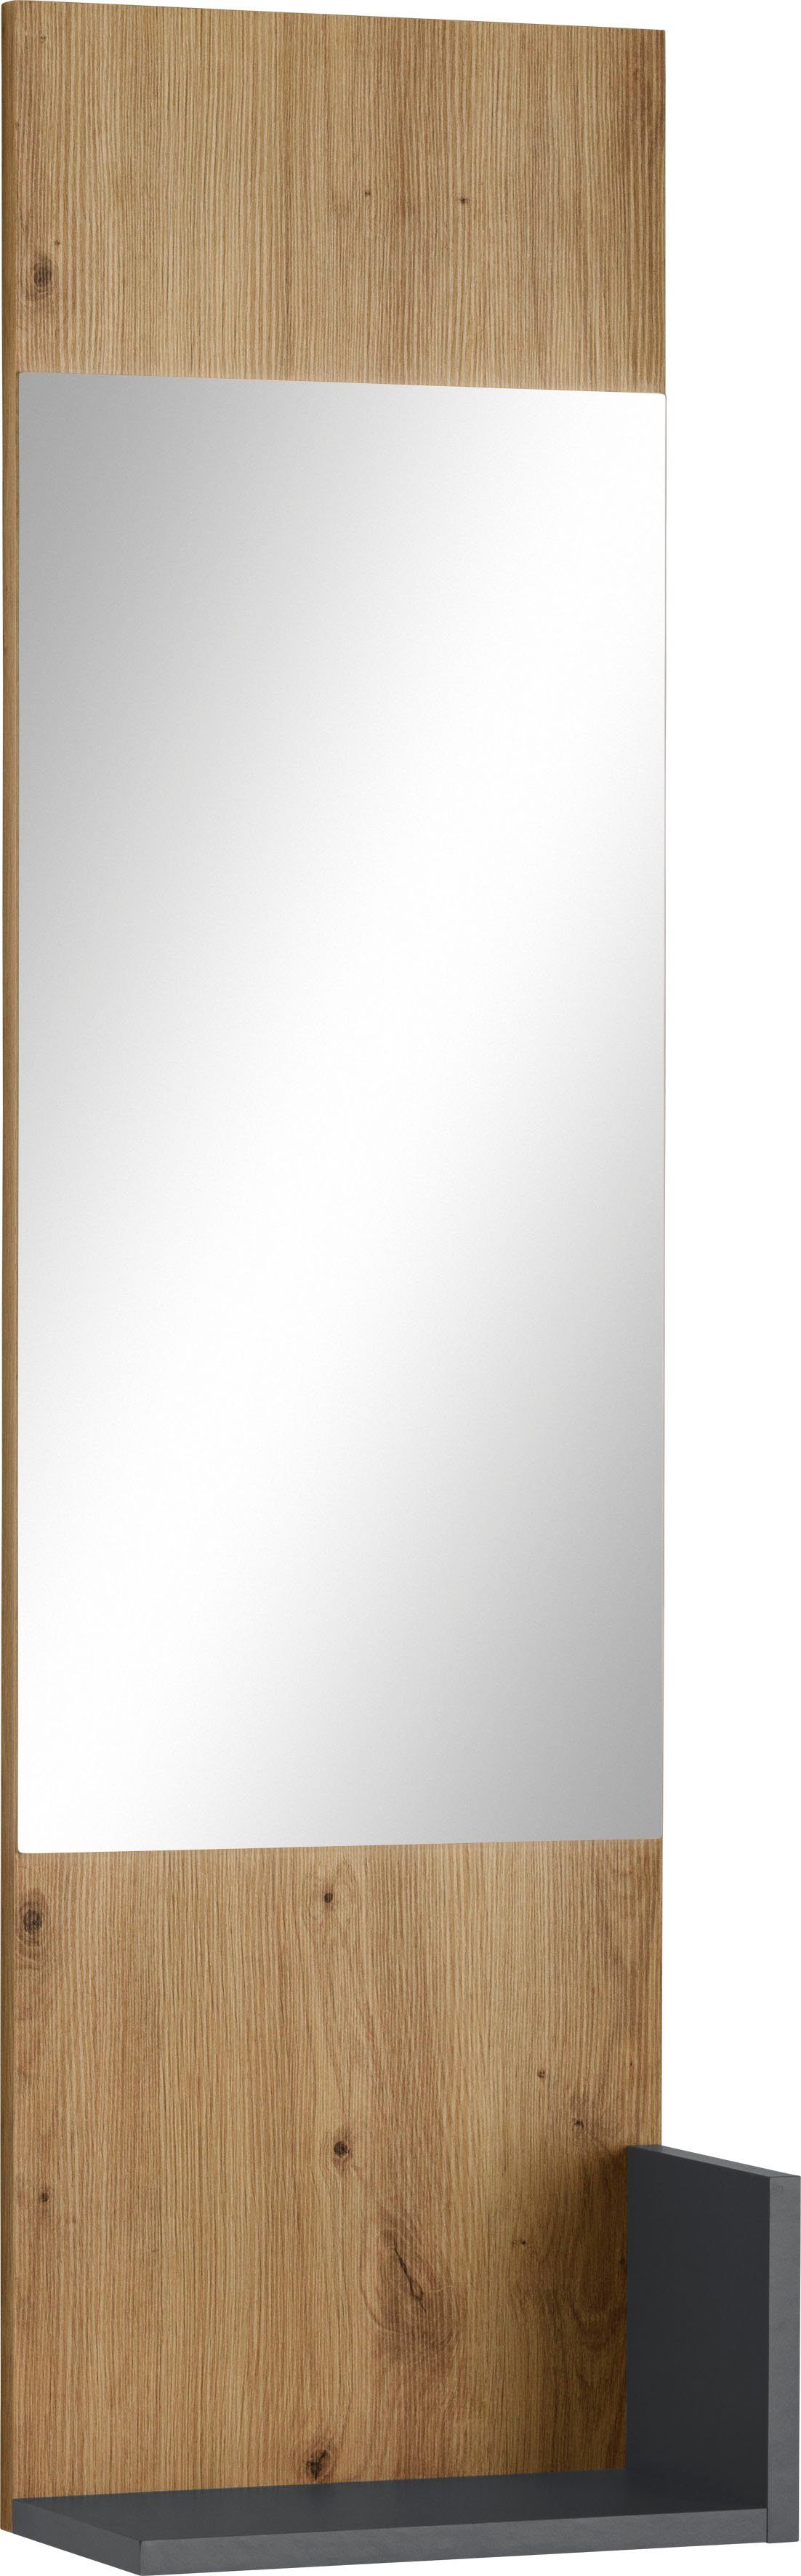 INOSIGN Spiegelpaneel Kosmo, Breite 32 cm, mit 1 Ablage eiche/anthrazit